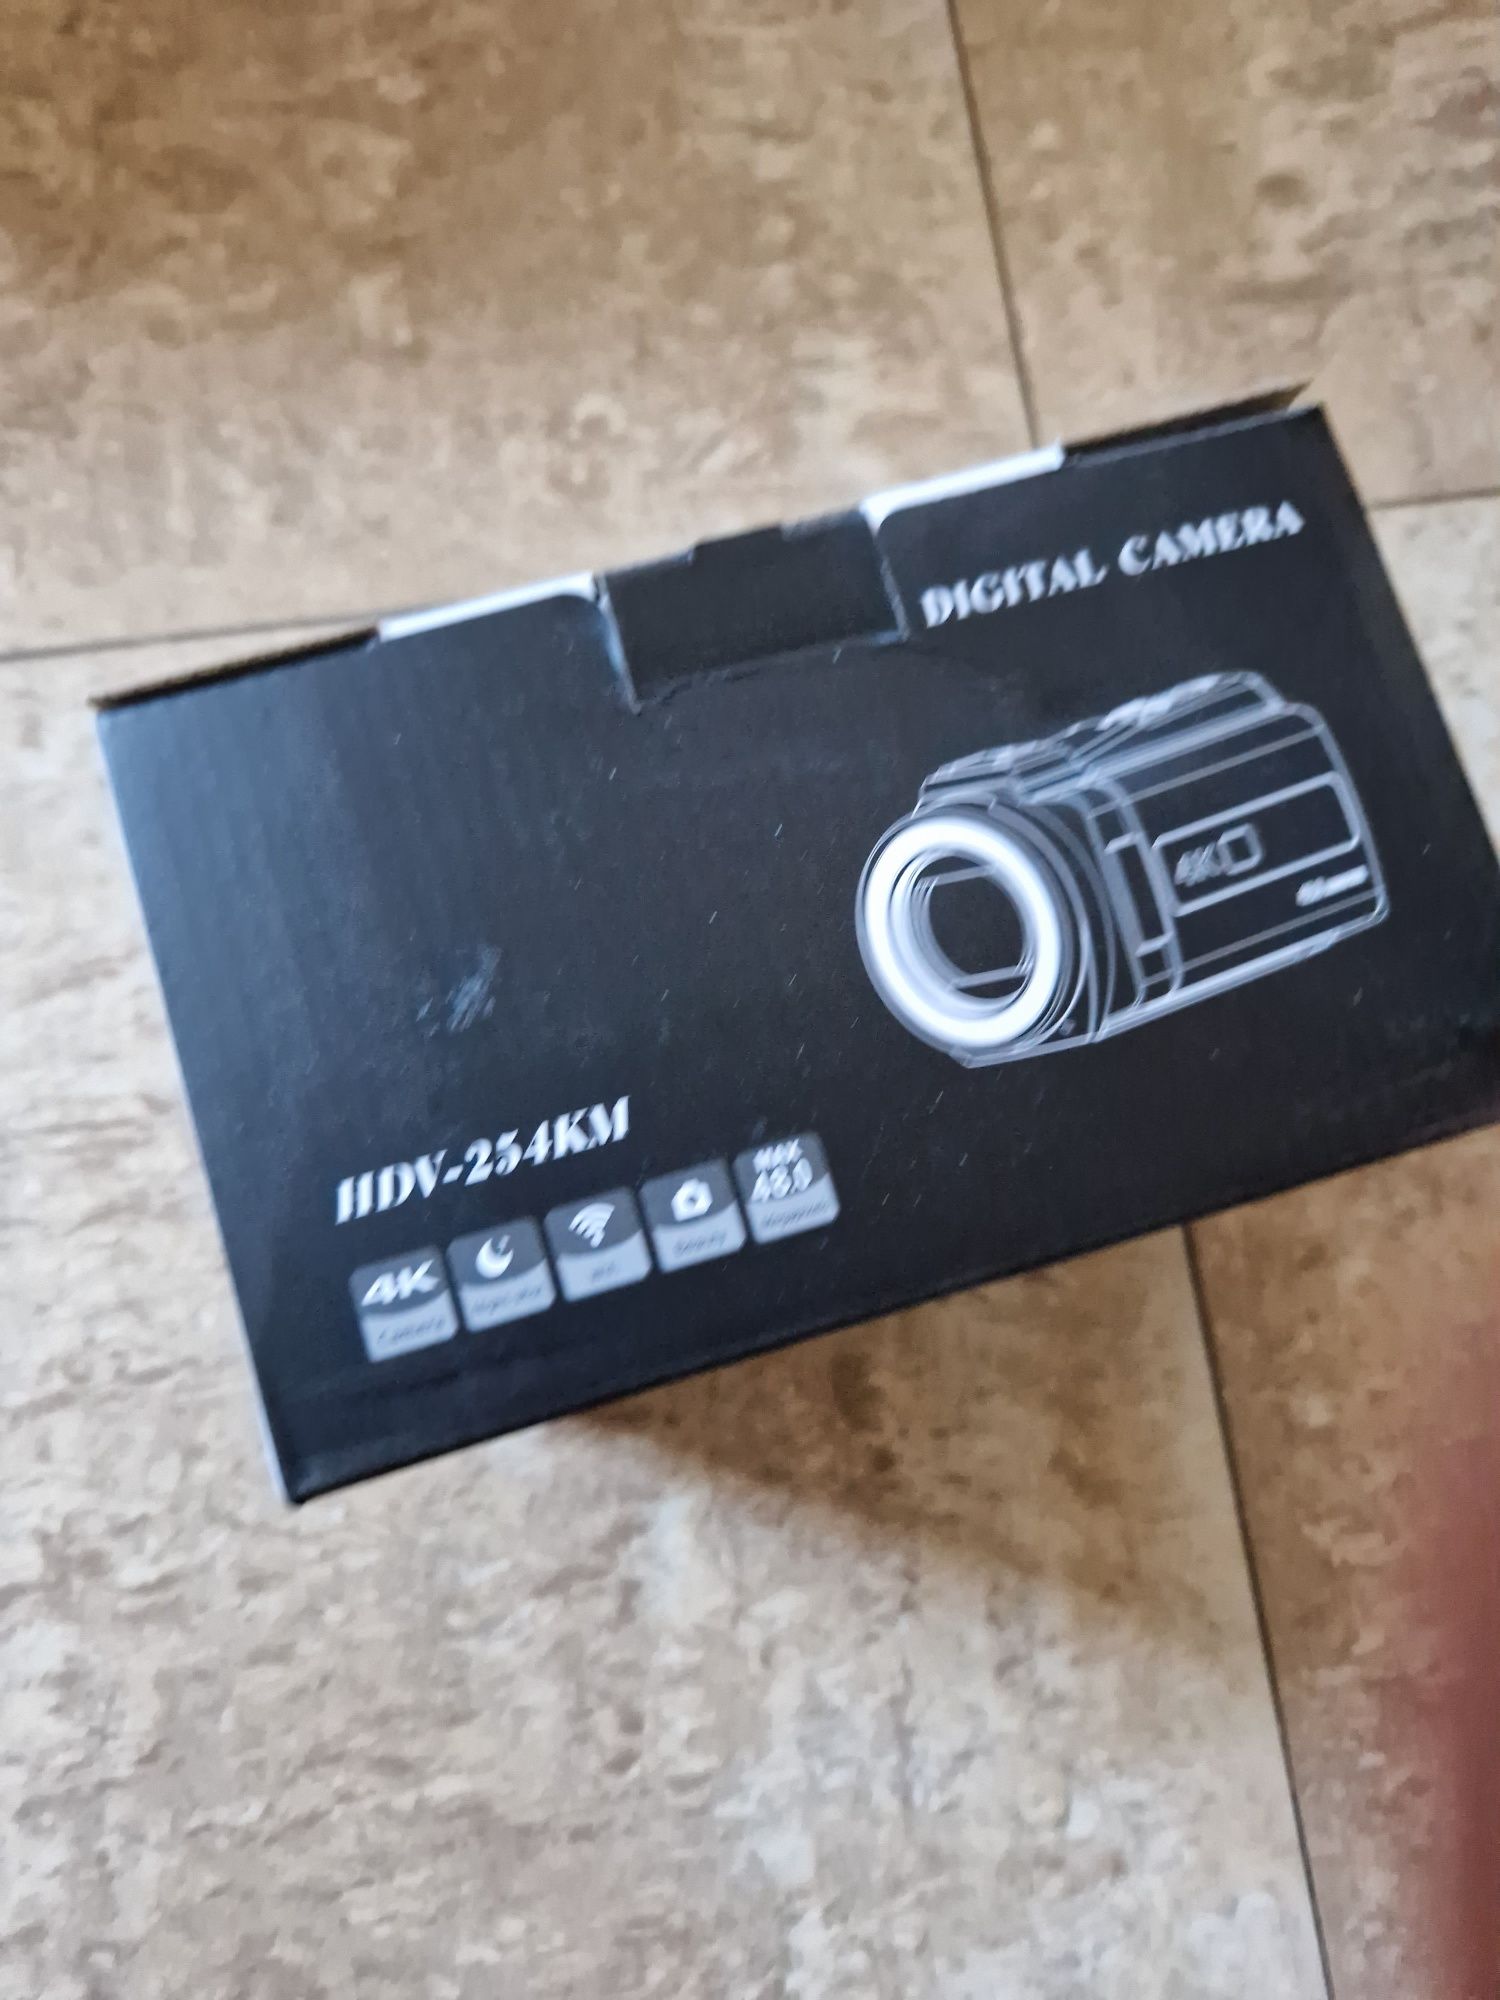 Digital camera HDV-254km (noua)